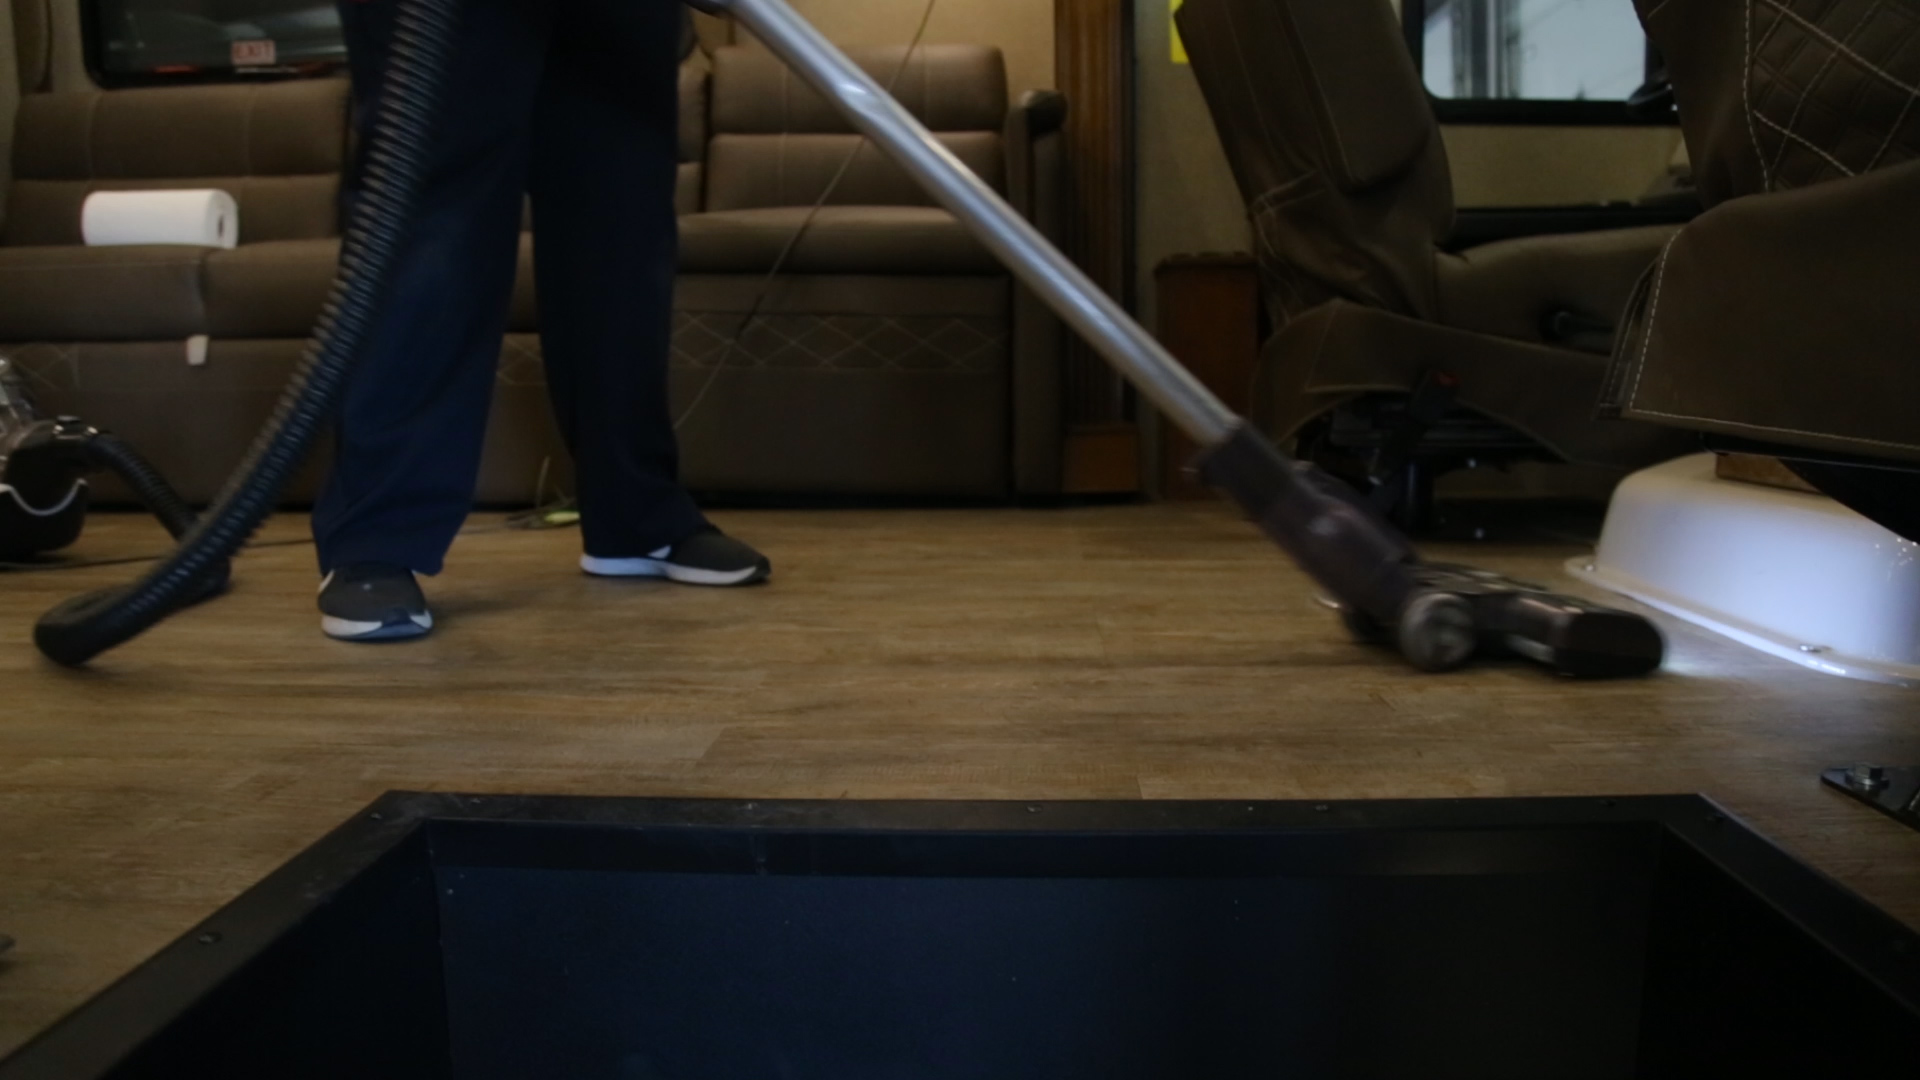 A woman vacuums an RV floor.